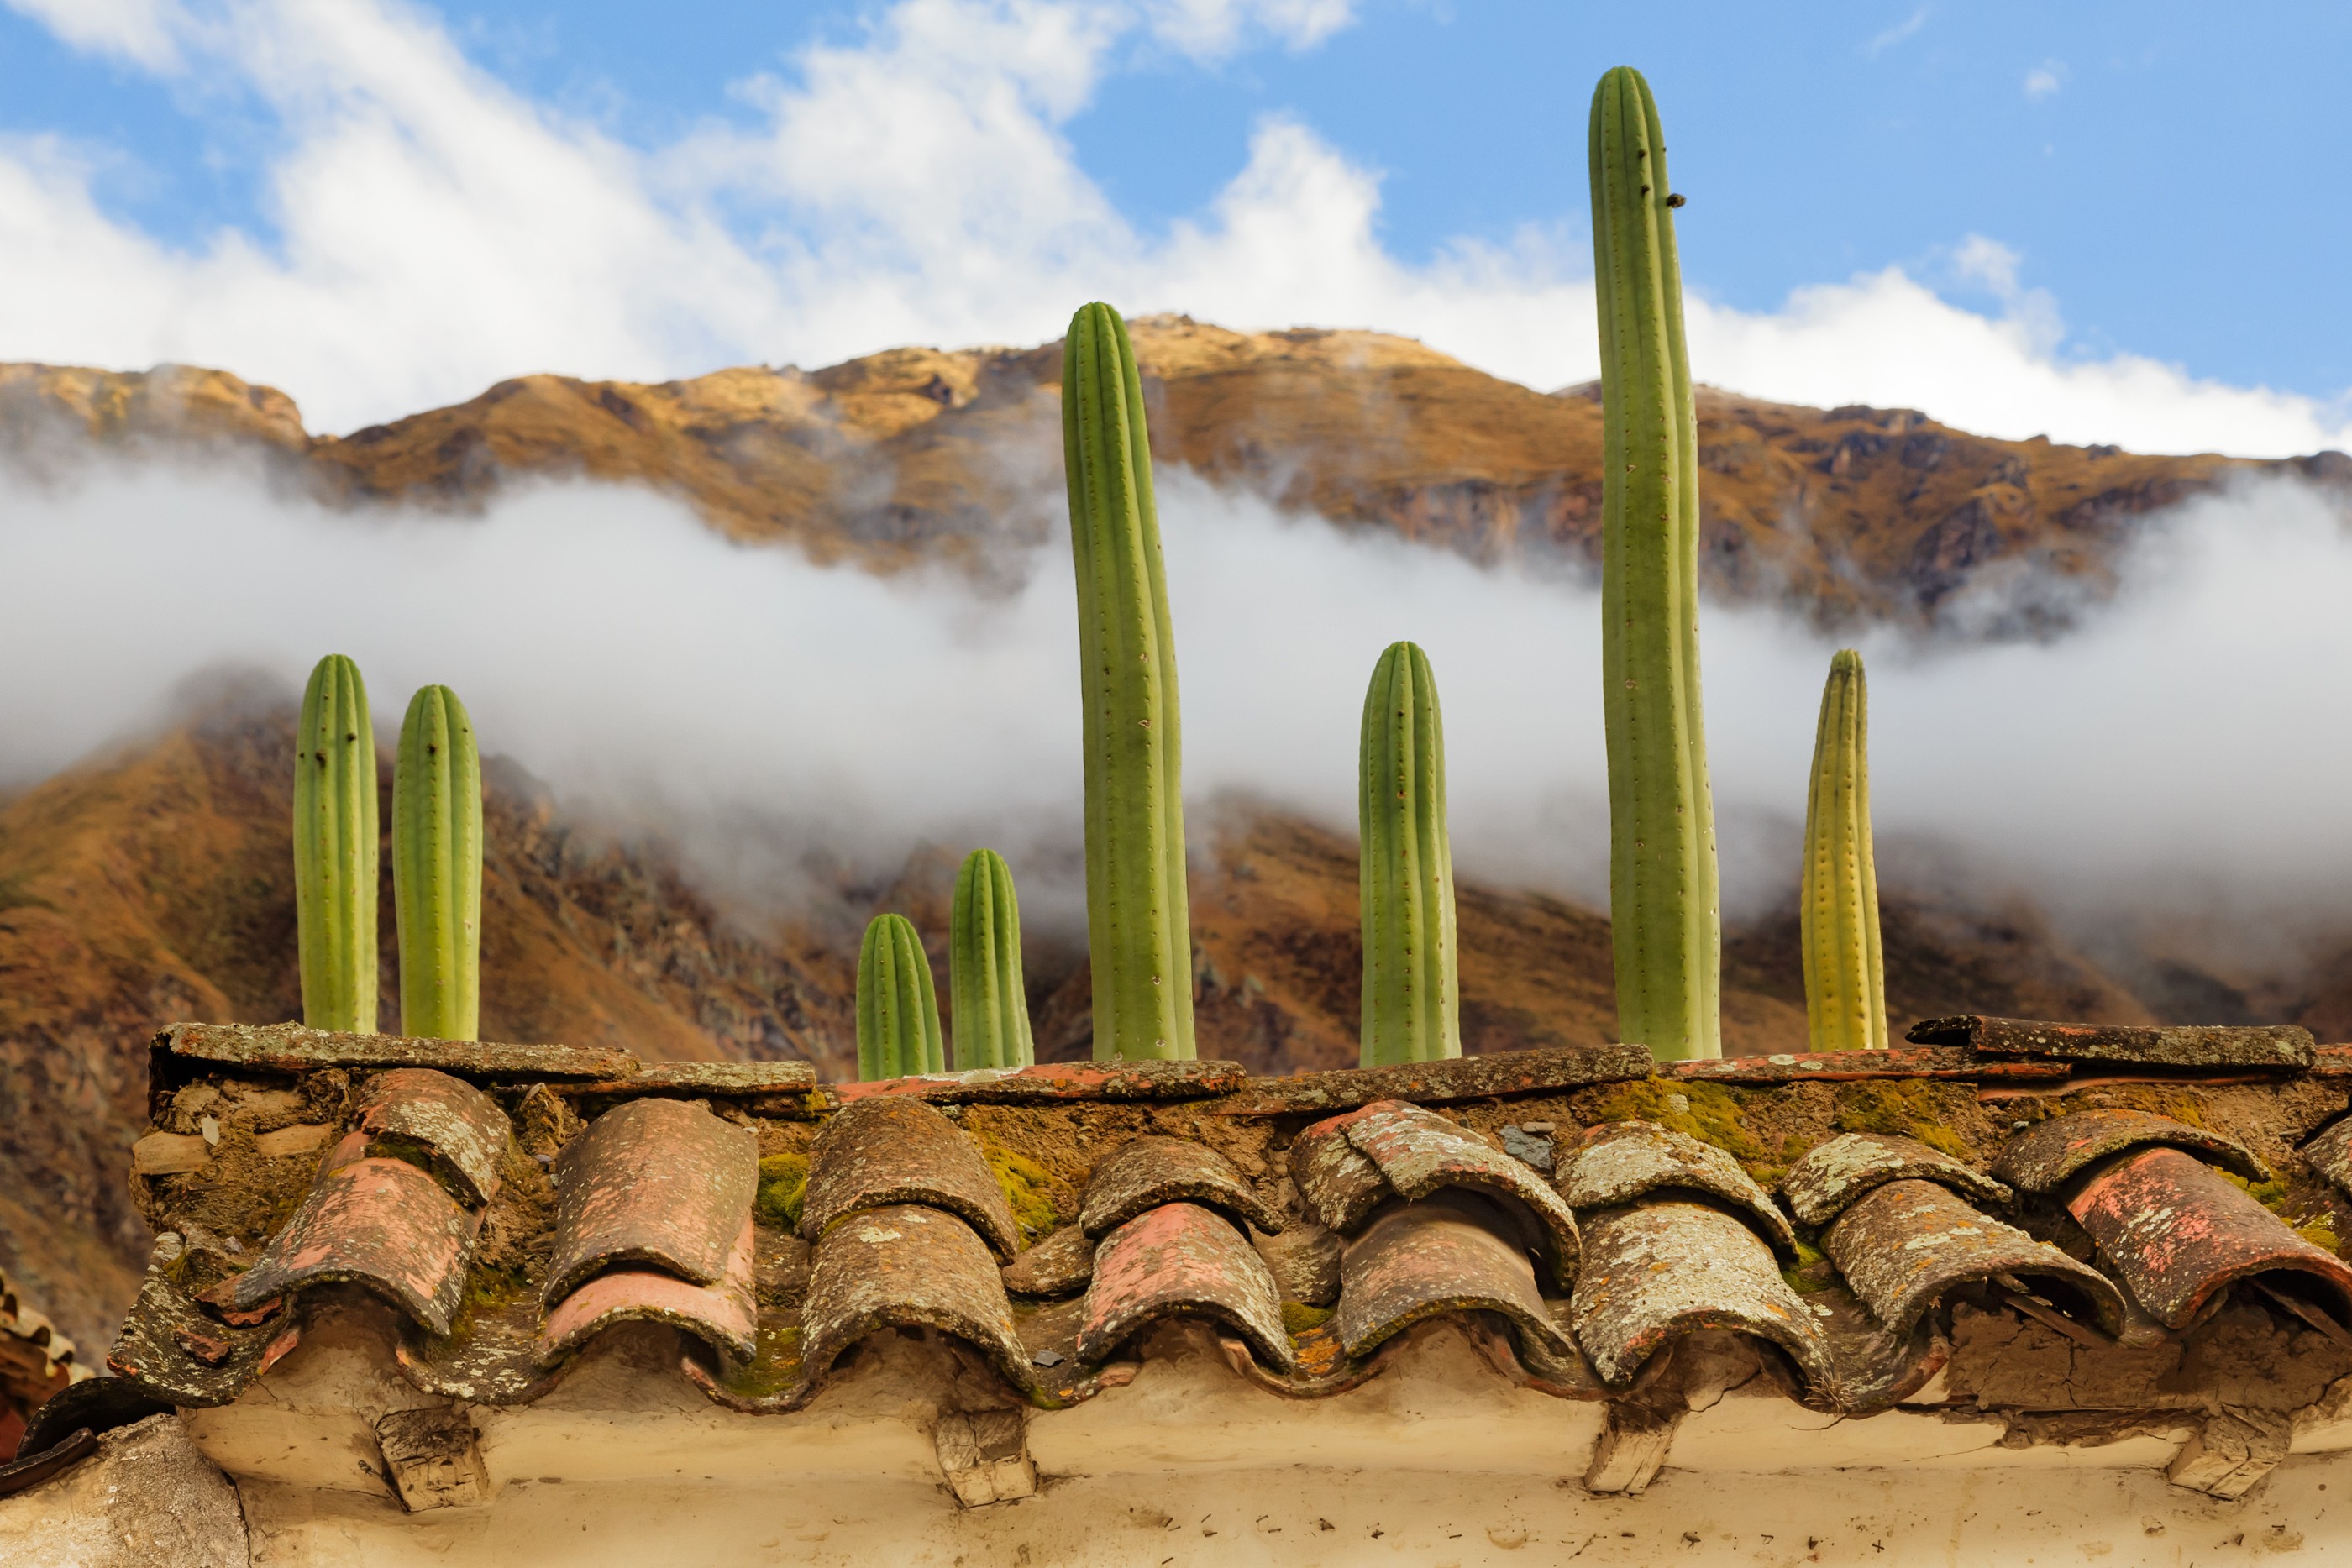 General 2800x1867 landscape nature plants cactus rooftops clouds beige